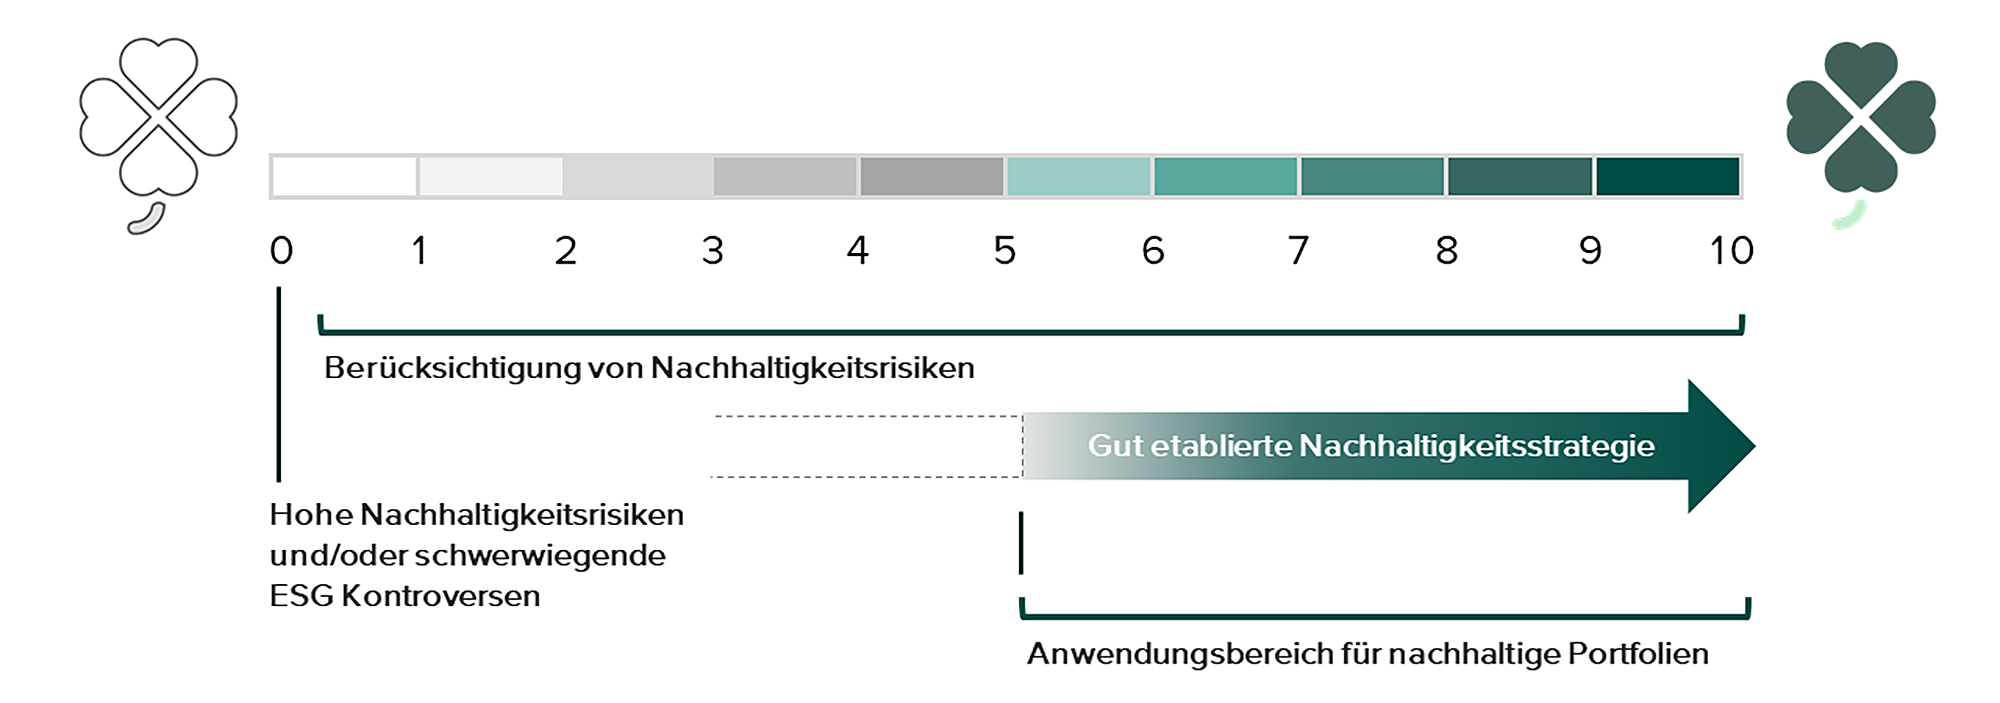 Kleeblatt-Rating